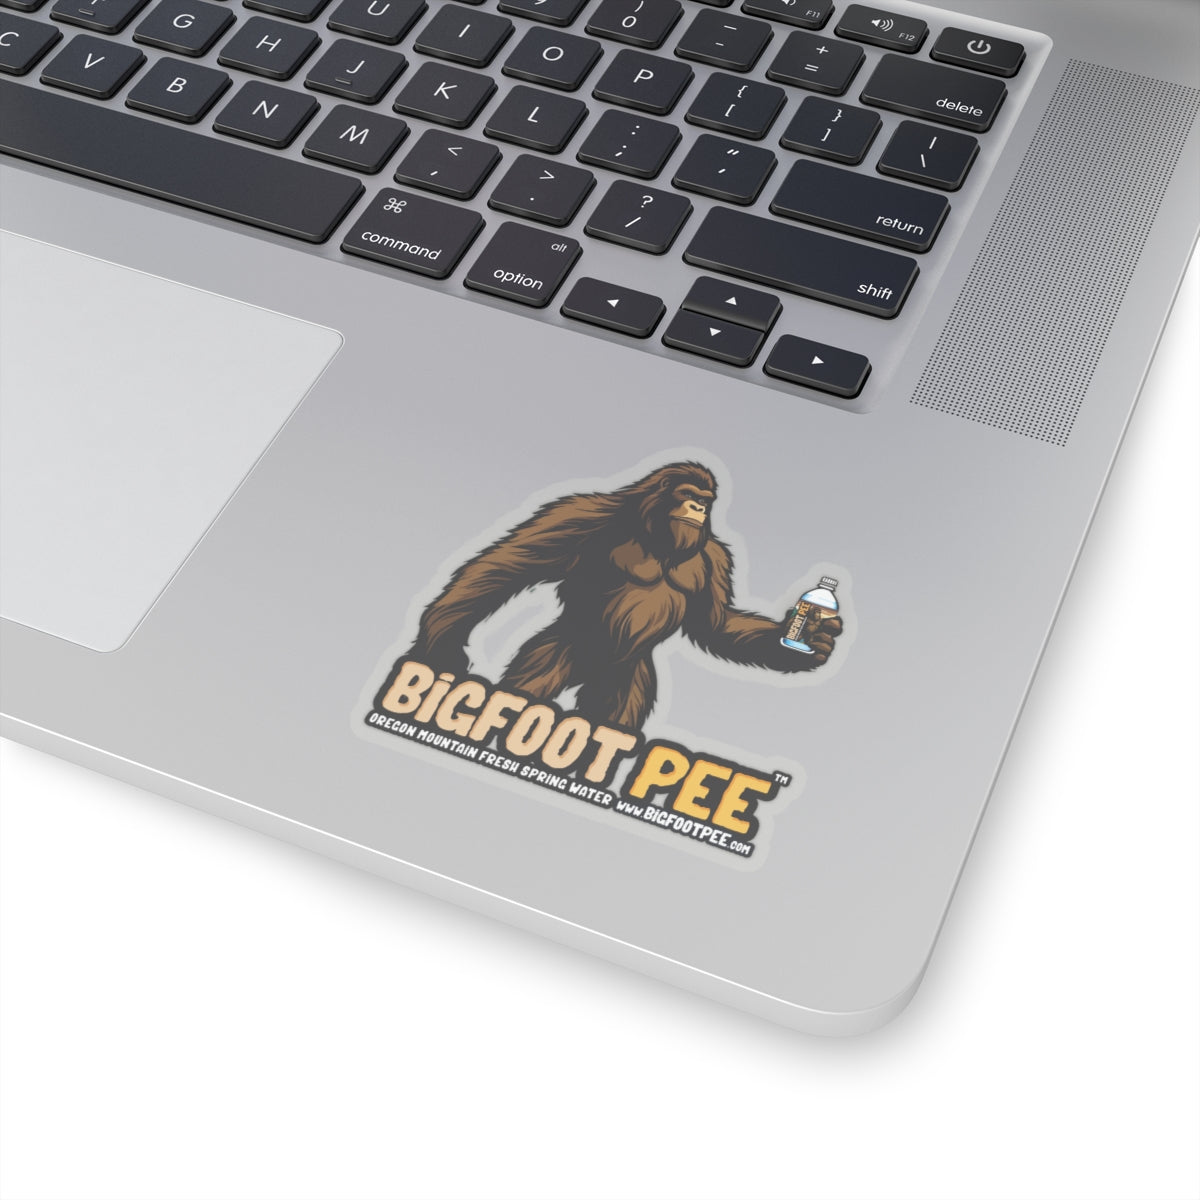 Bigfoot Pee ll Kiss-Cut Stickers